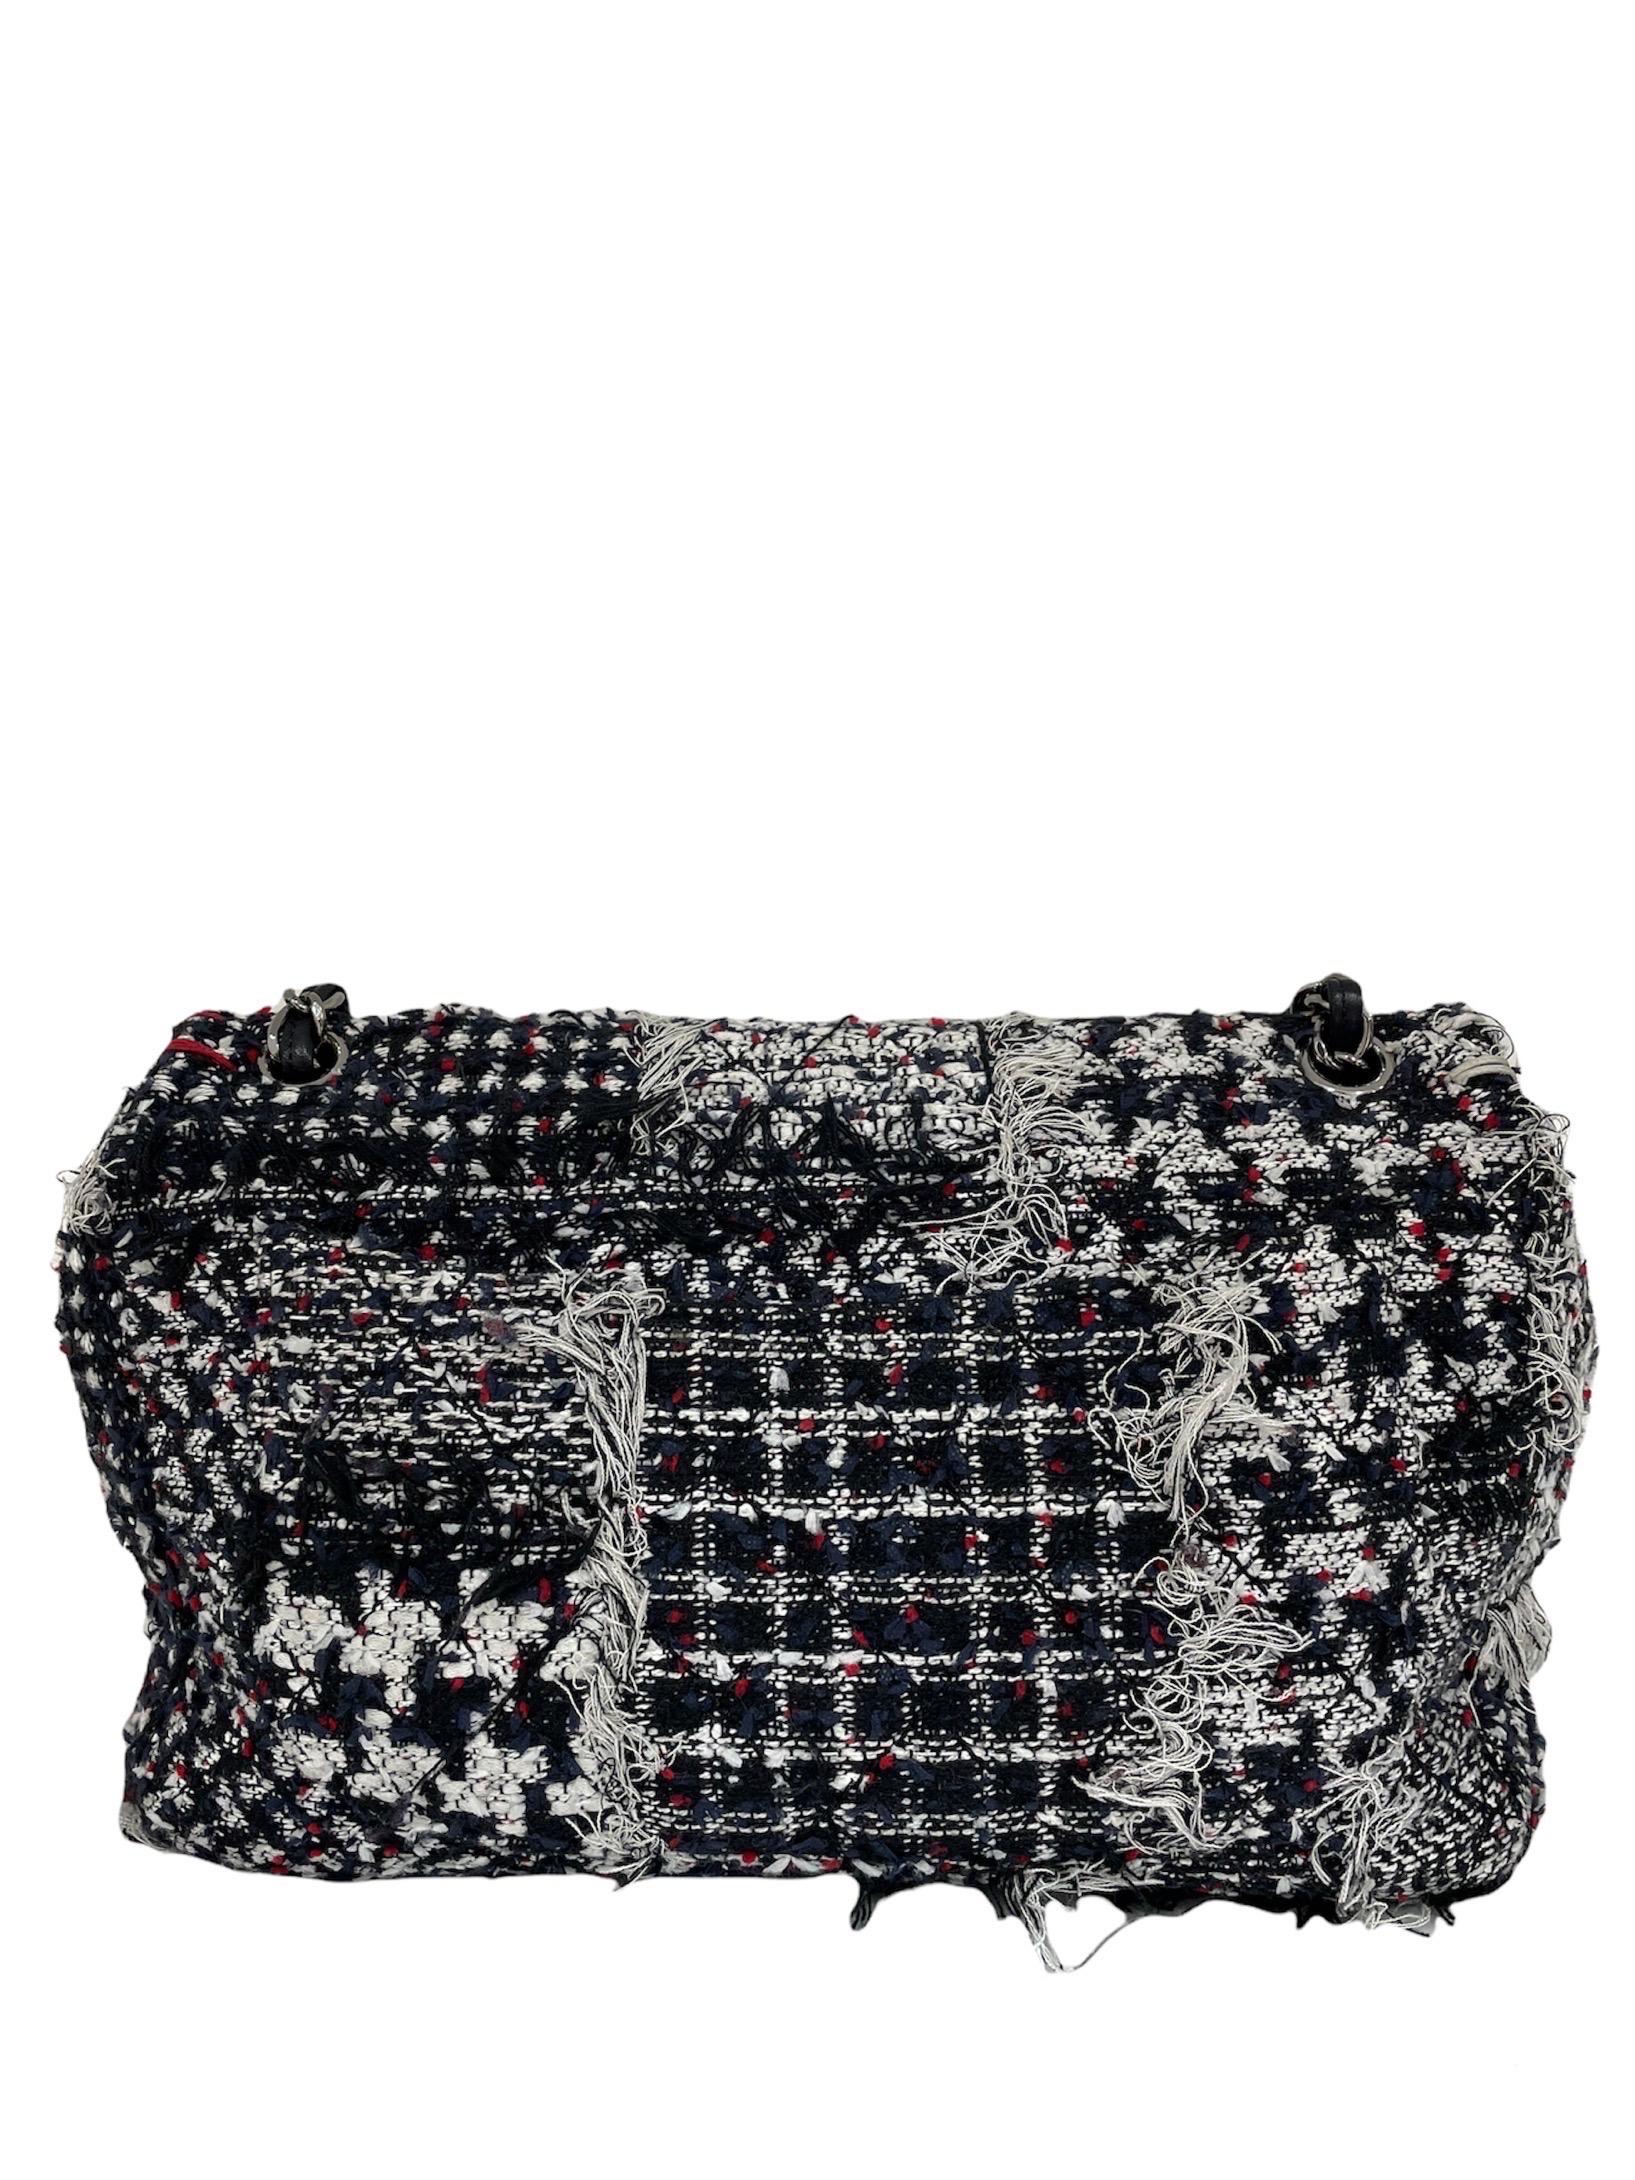 2015 Chanel Blue Tweed Shoulder Bag Limited Edition 3